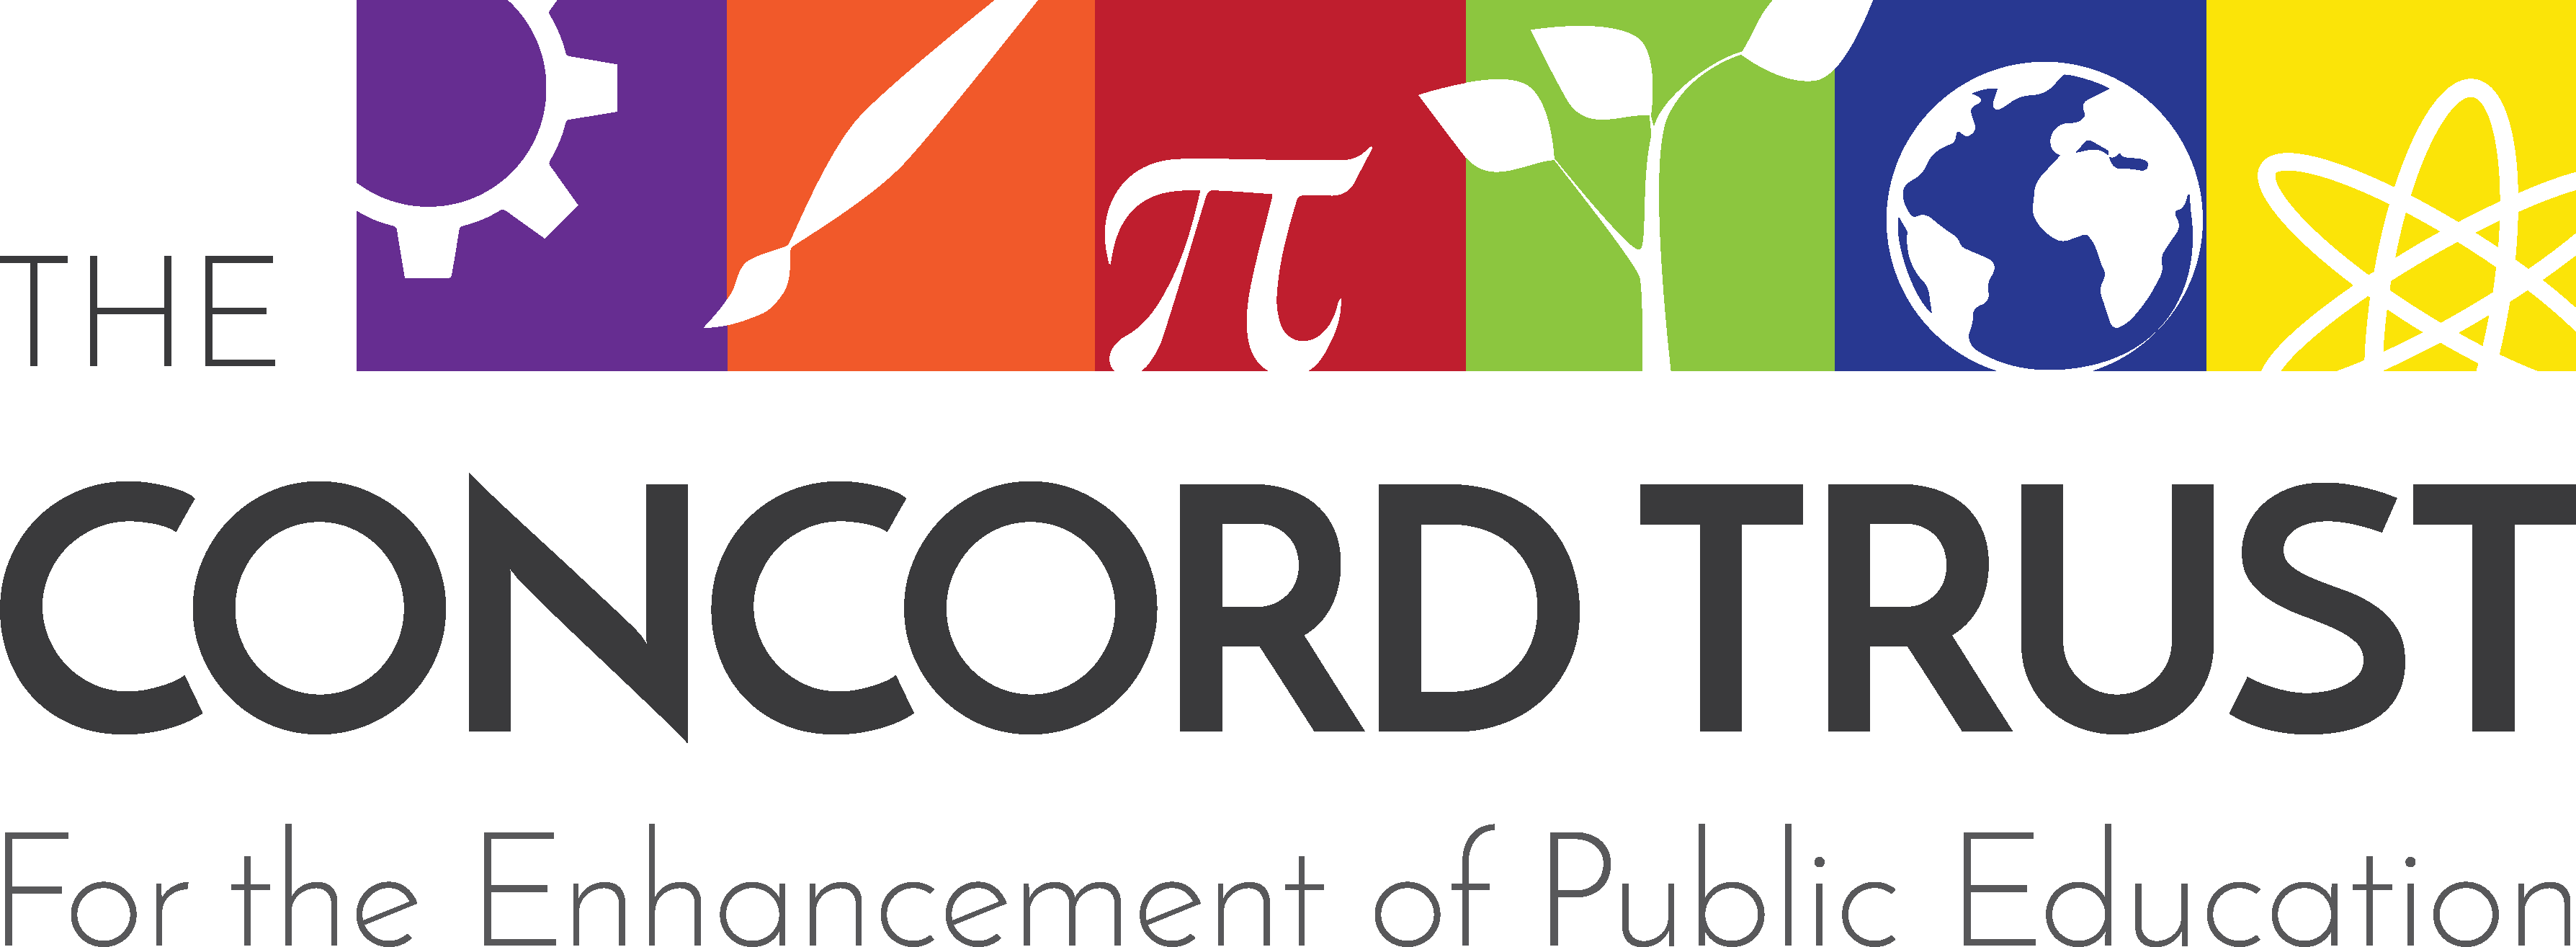 The Concord Trust